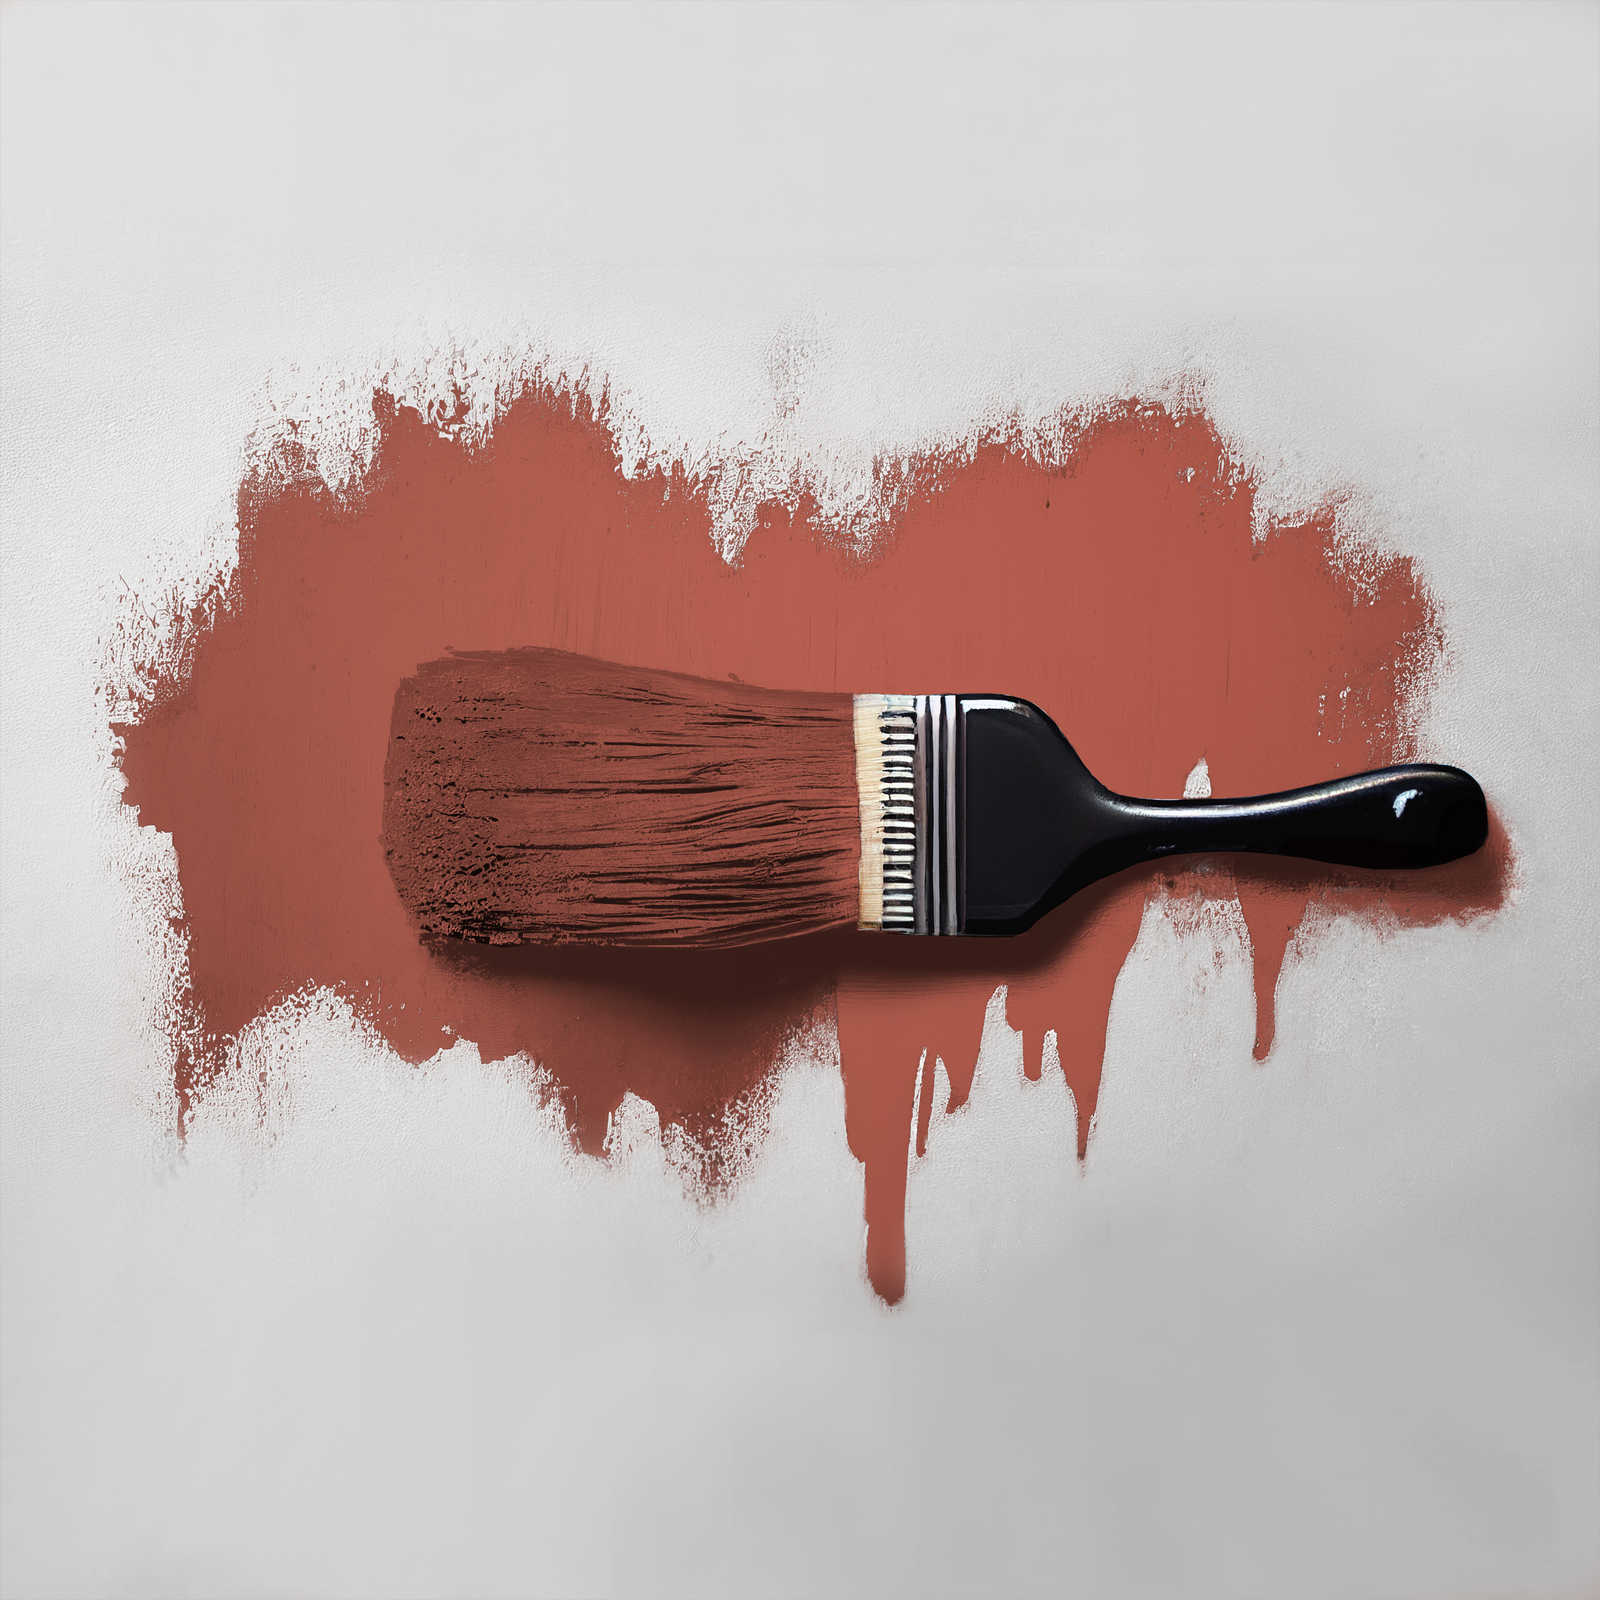             Wall Paint TCK5013 »Simple Safron« in intense saffron – 2.5 litre
        